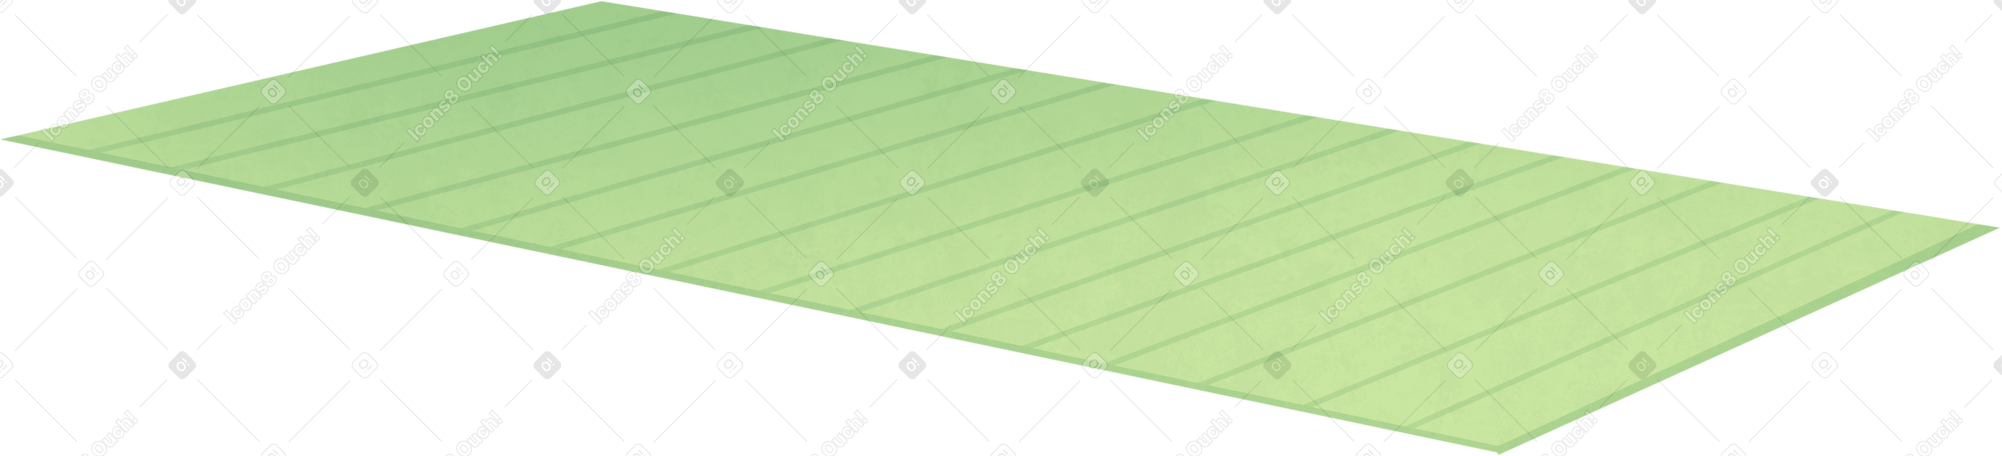 green yoga mat Illustration in PNG, SVG